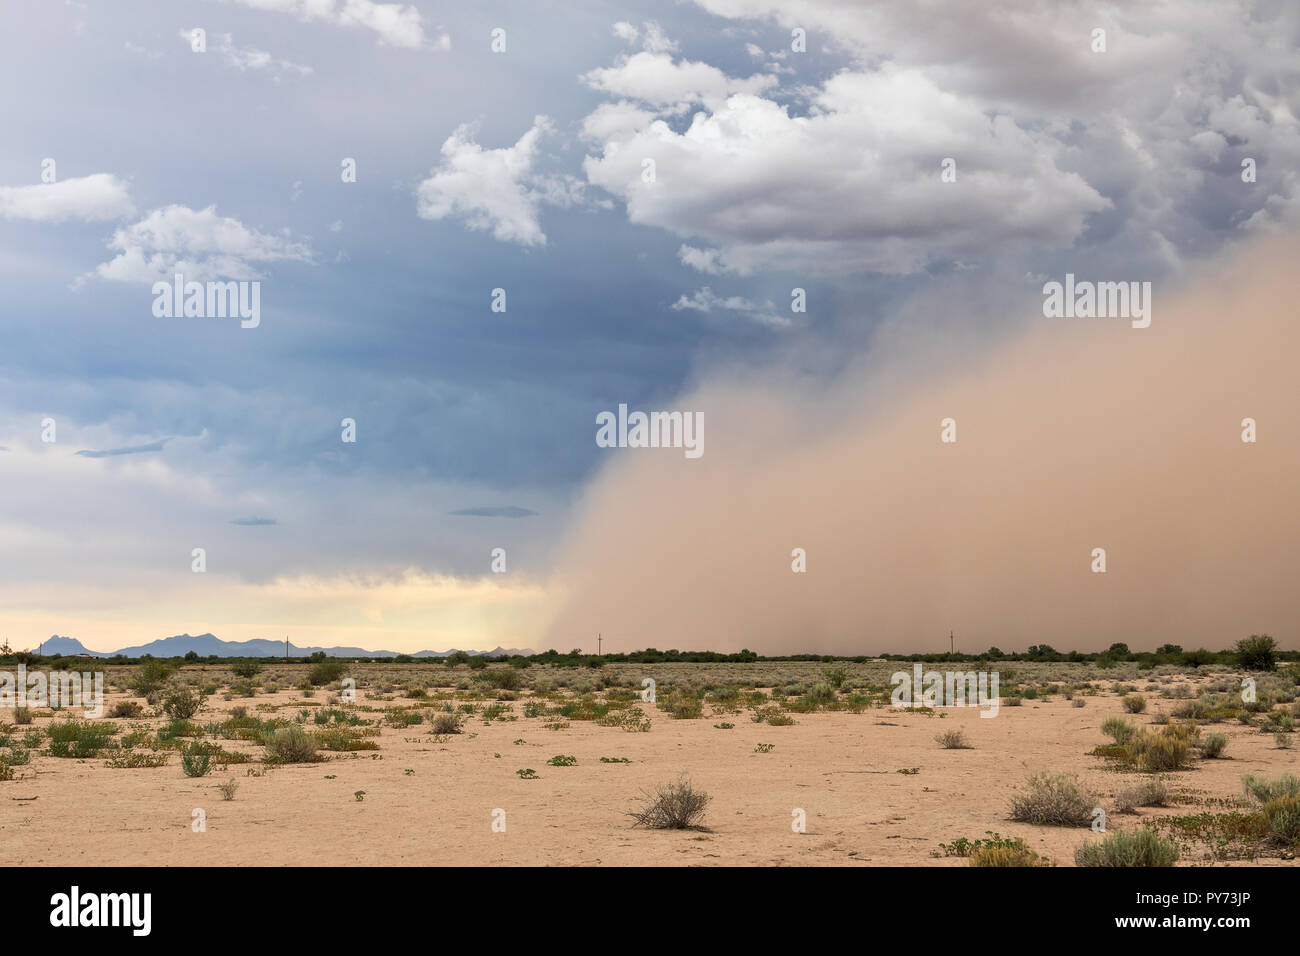 Während der Monsunsaison im Sommer zieht sich ein Staubsturm durch die Wüste von Arizona Stockfoto